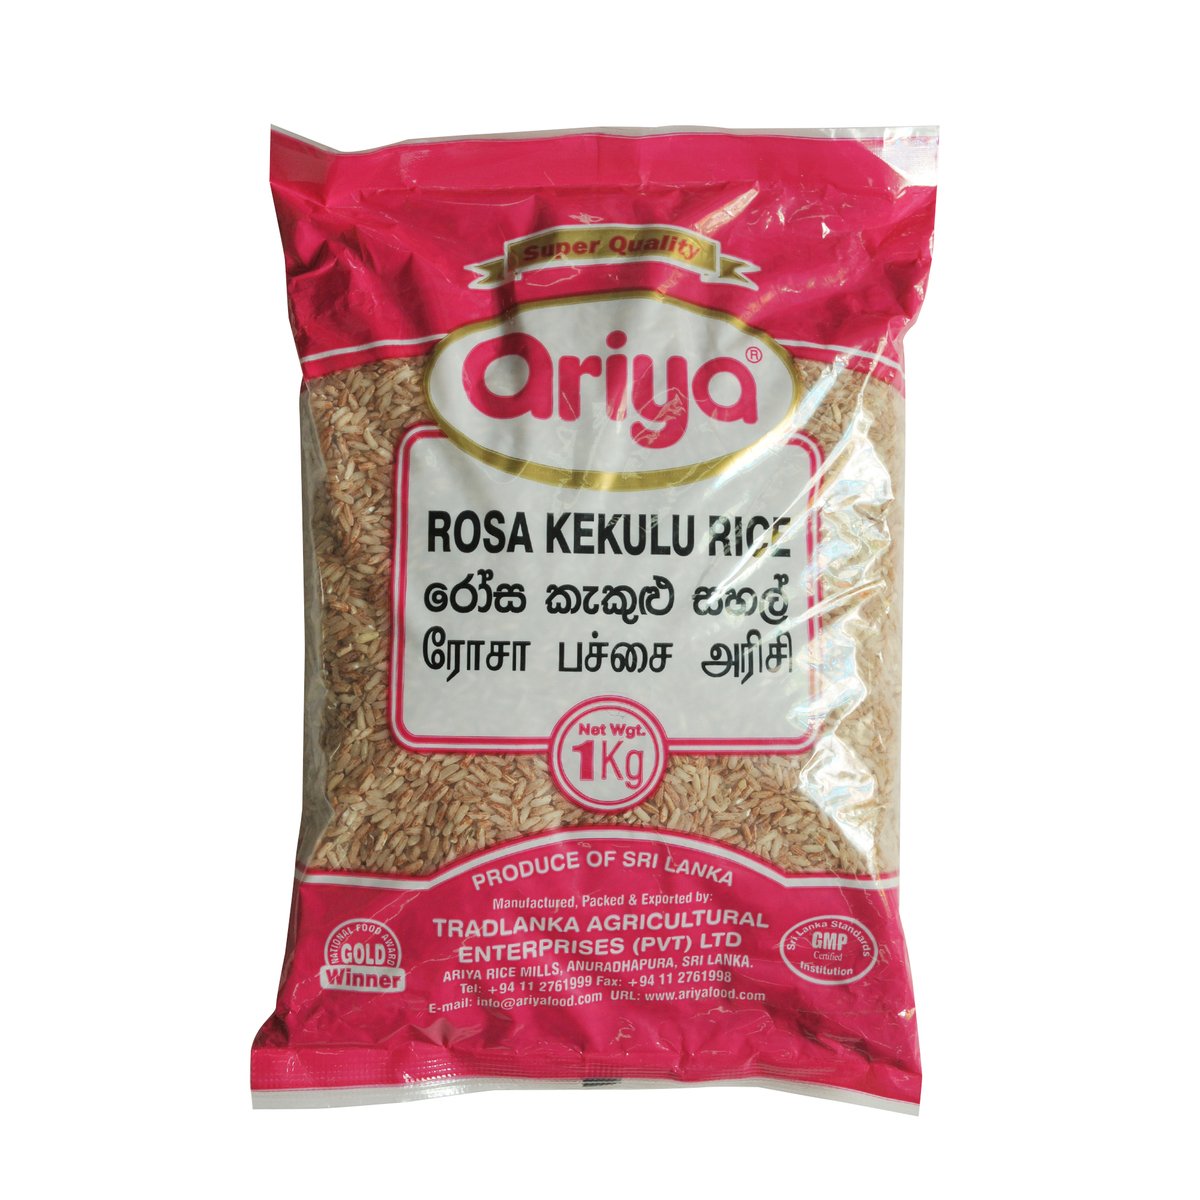 Ariya Rosa Kekulu Rice 1 kg